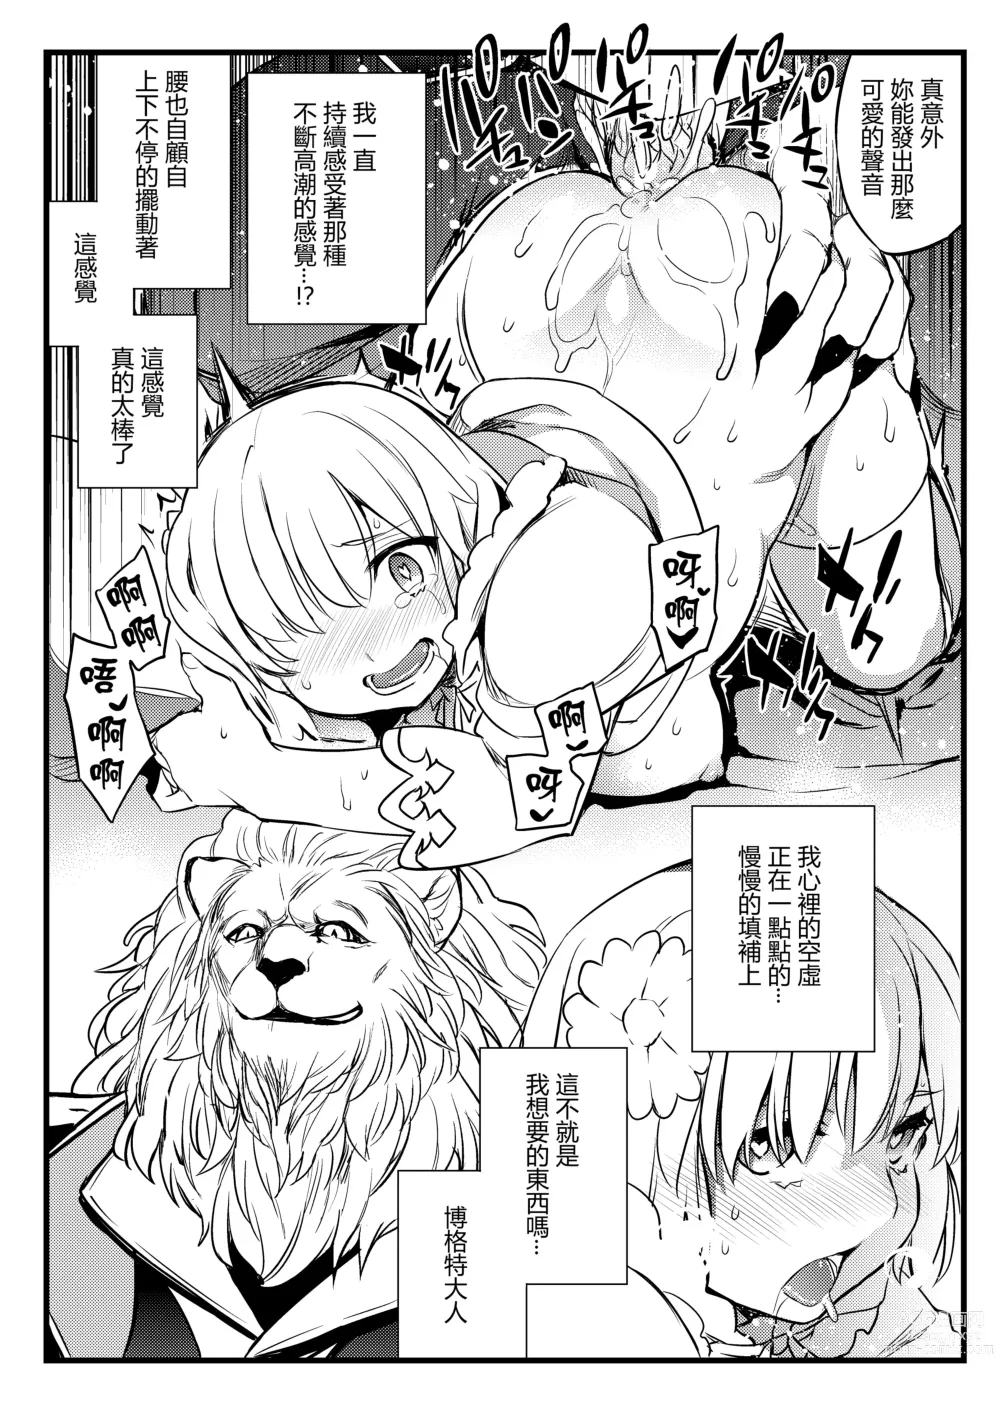 Page 11 of doujinshi Shishi no Hanayome Juukan Mash